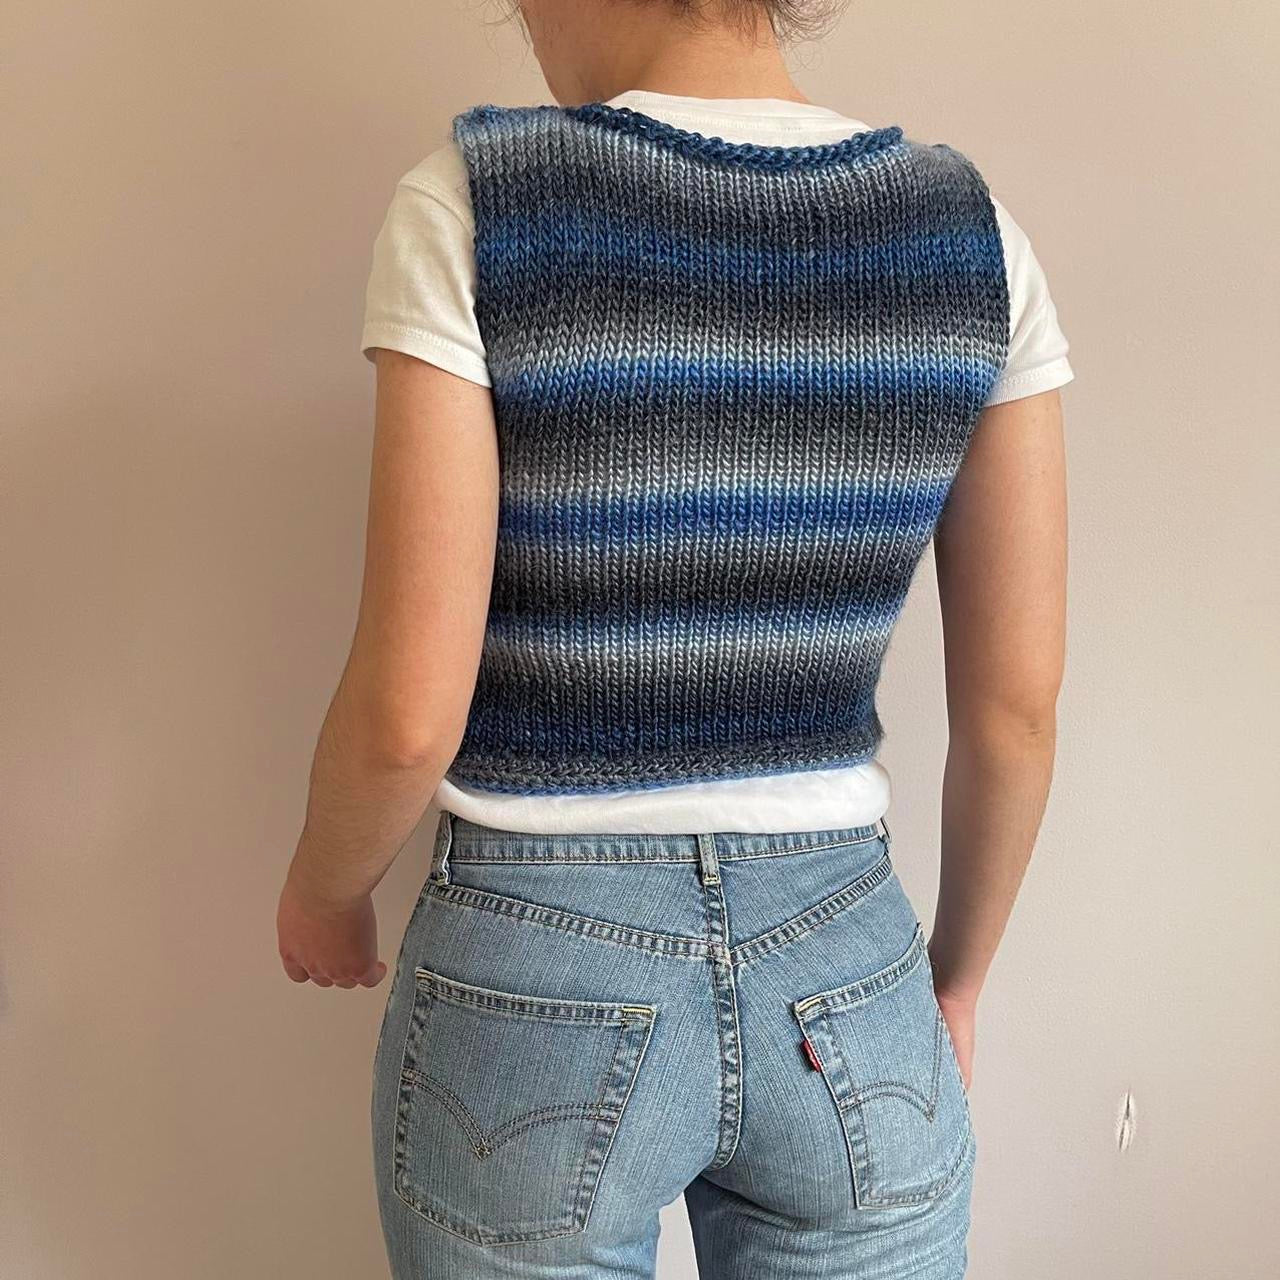 The Blue Daze Vest - handmade knitted sweater vest